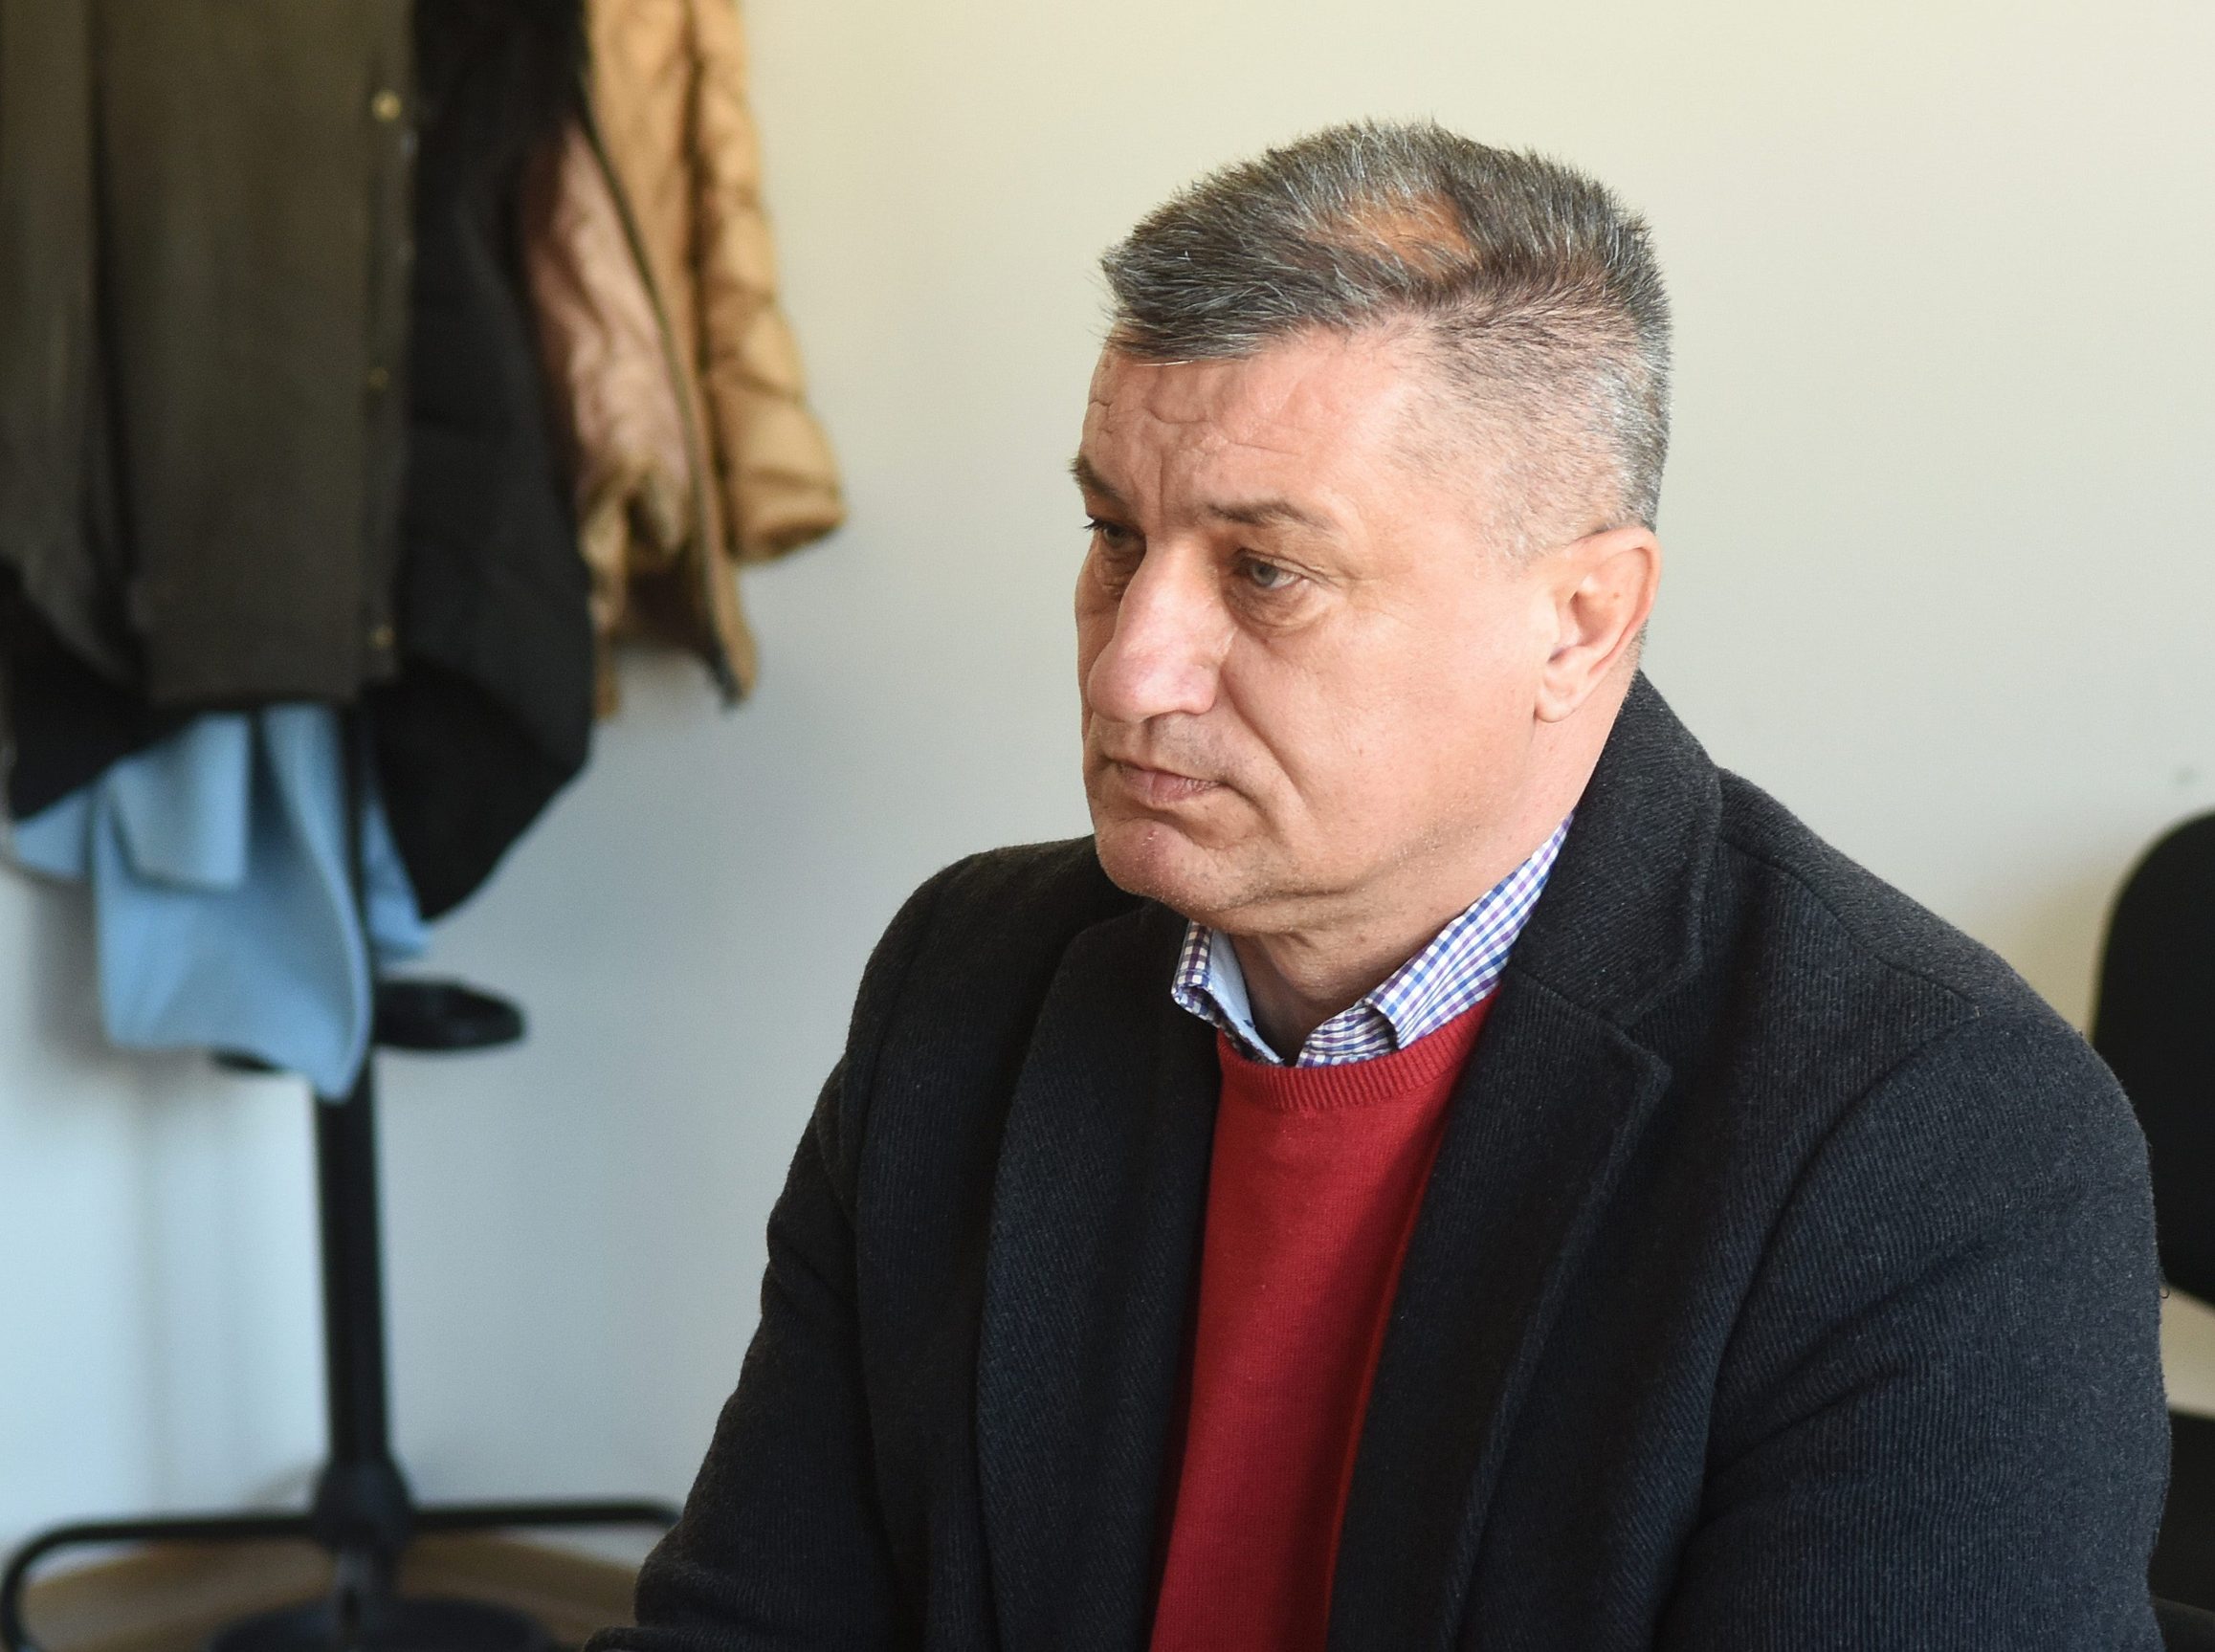 Načelnik općine Lasinja Željko Prigorac kao kandidat HDZ-a u dva je navrata osvojio načelnički mandat, ali je u međuvremenu istupio iz stranke